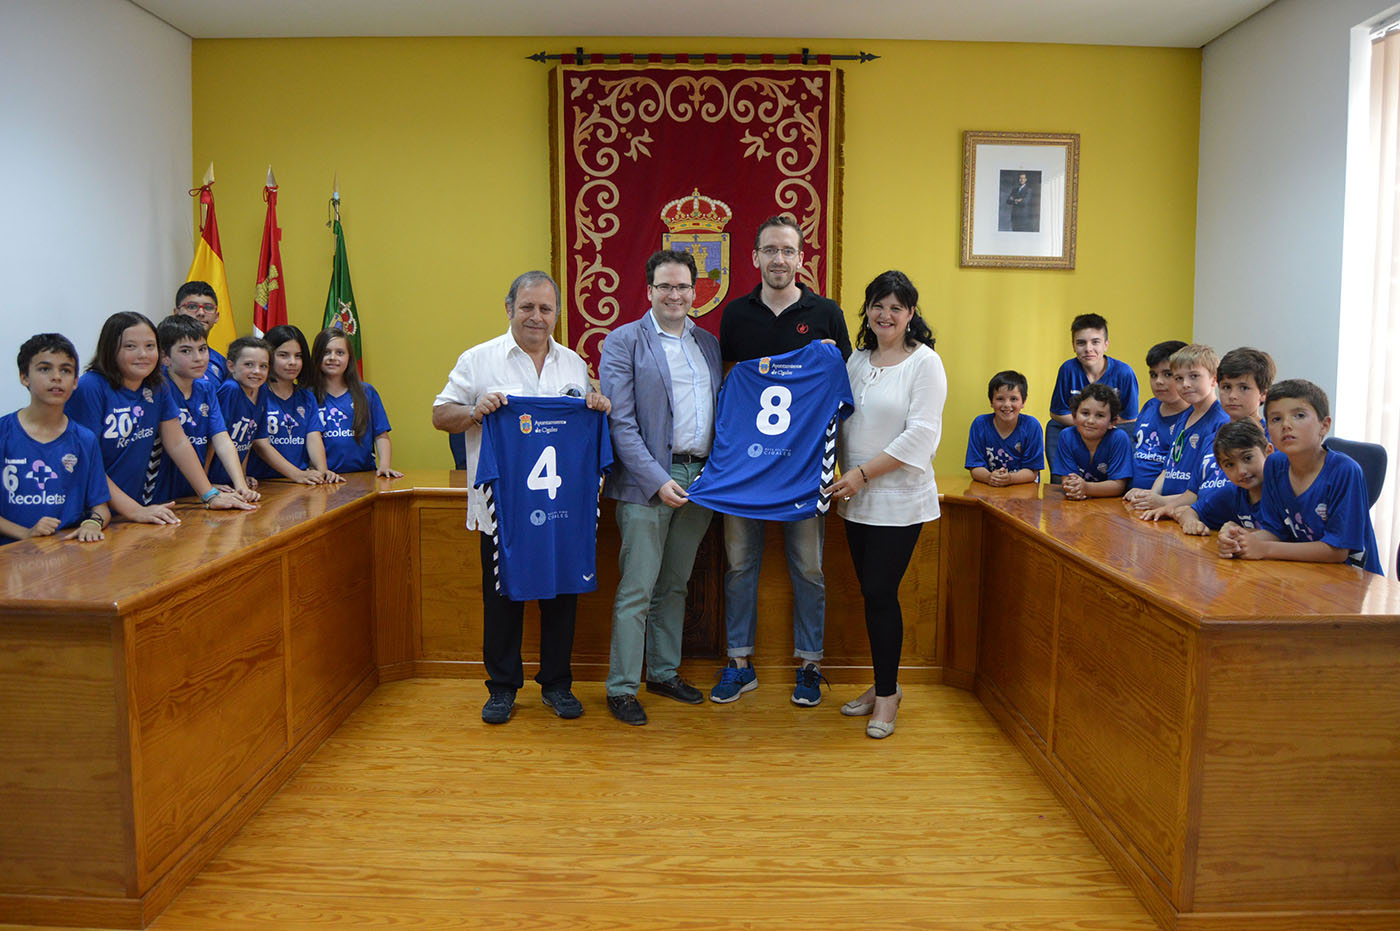 El Atlético Valladolid Recoletas premia el apoyo de Cigales, Fuensaldaña y Ruta del Vino Cigales al programa A Jugar!